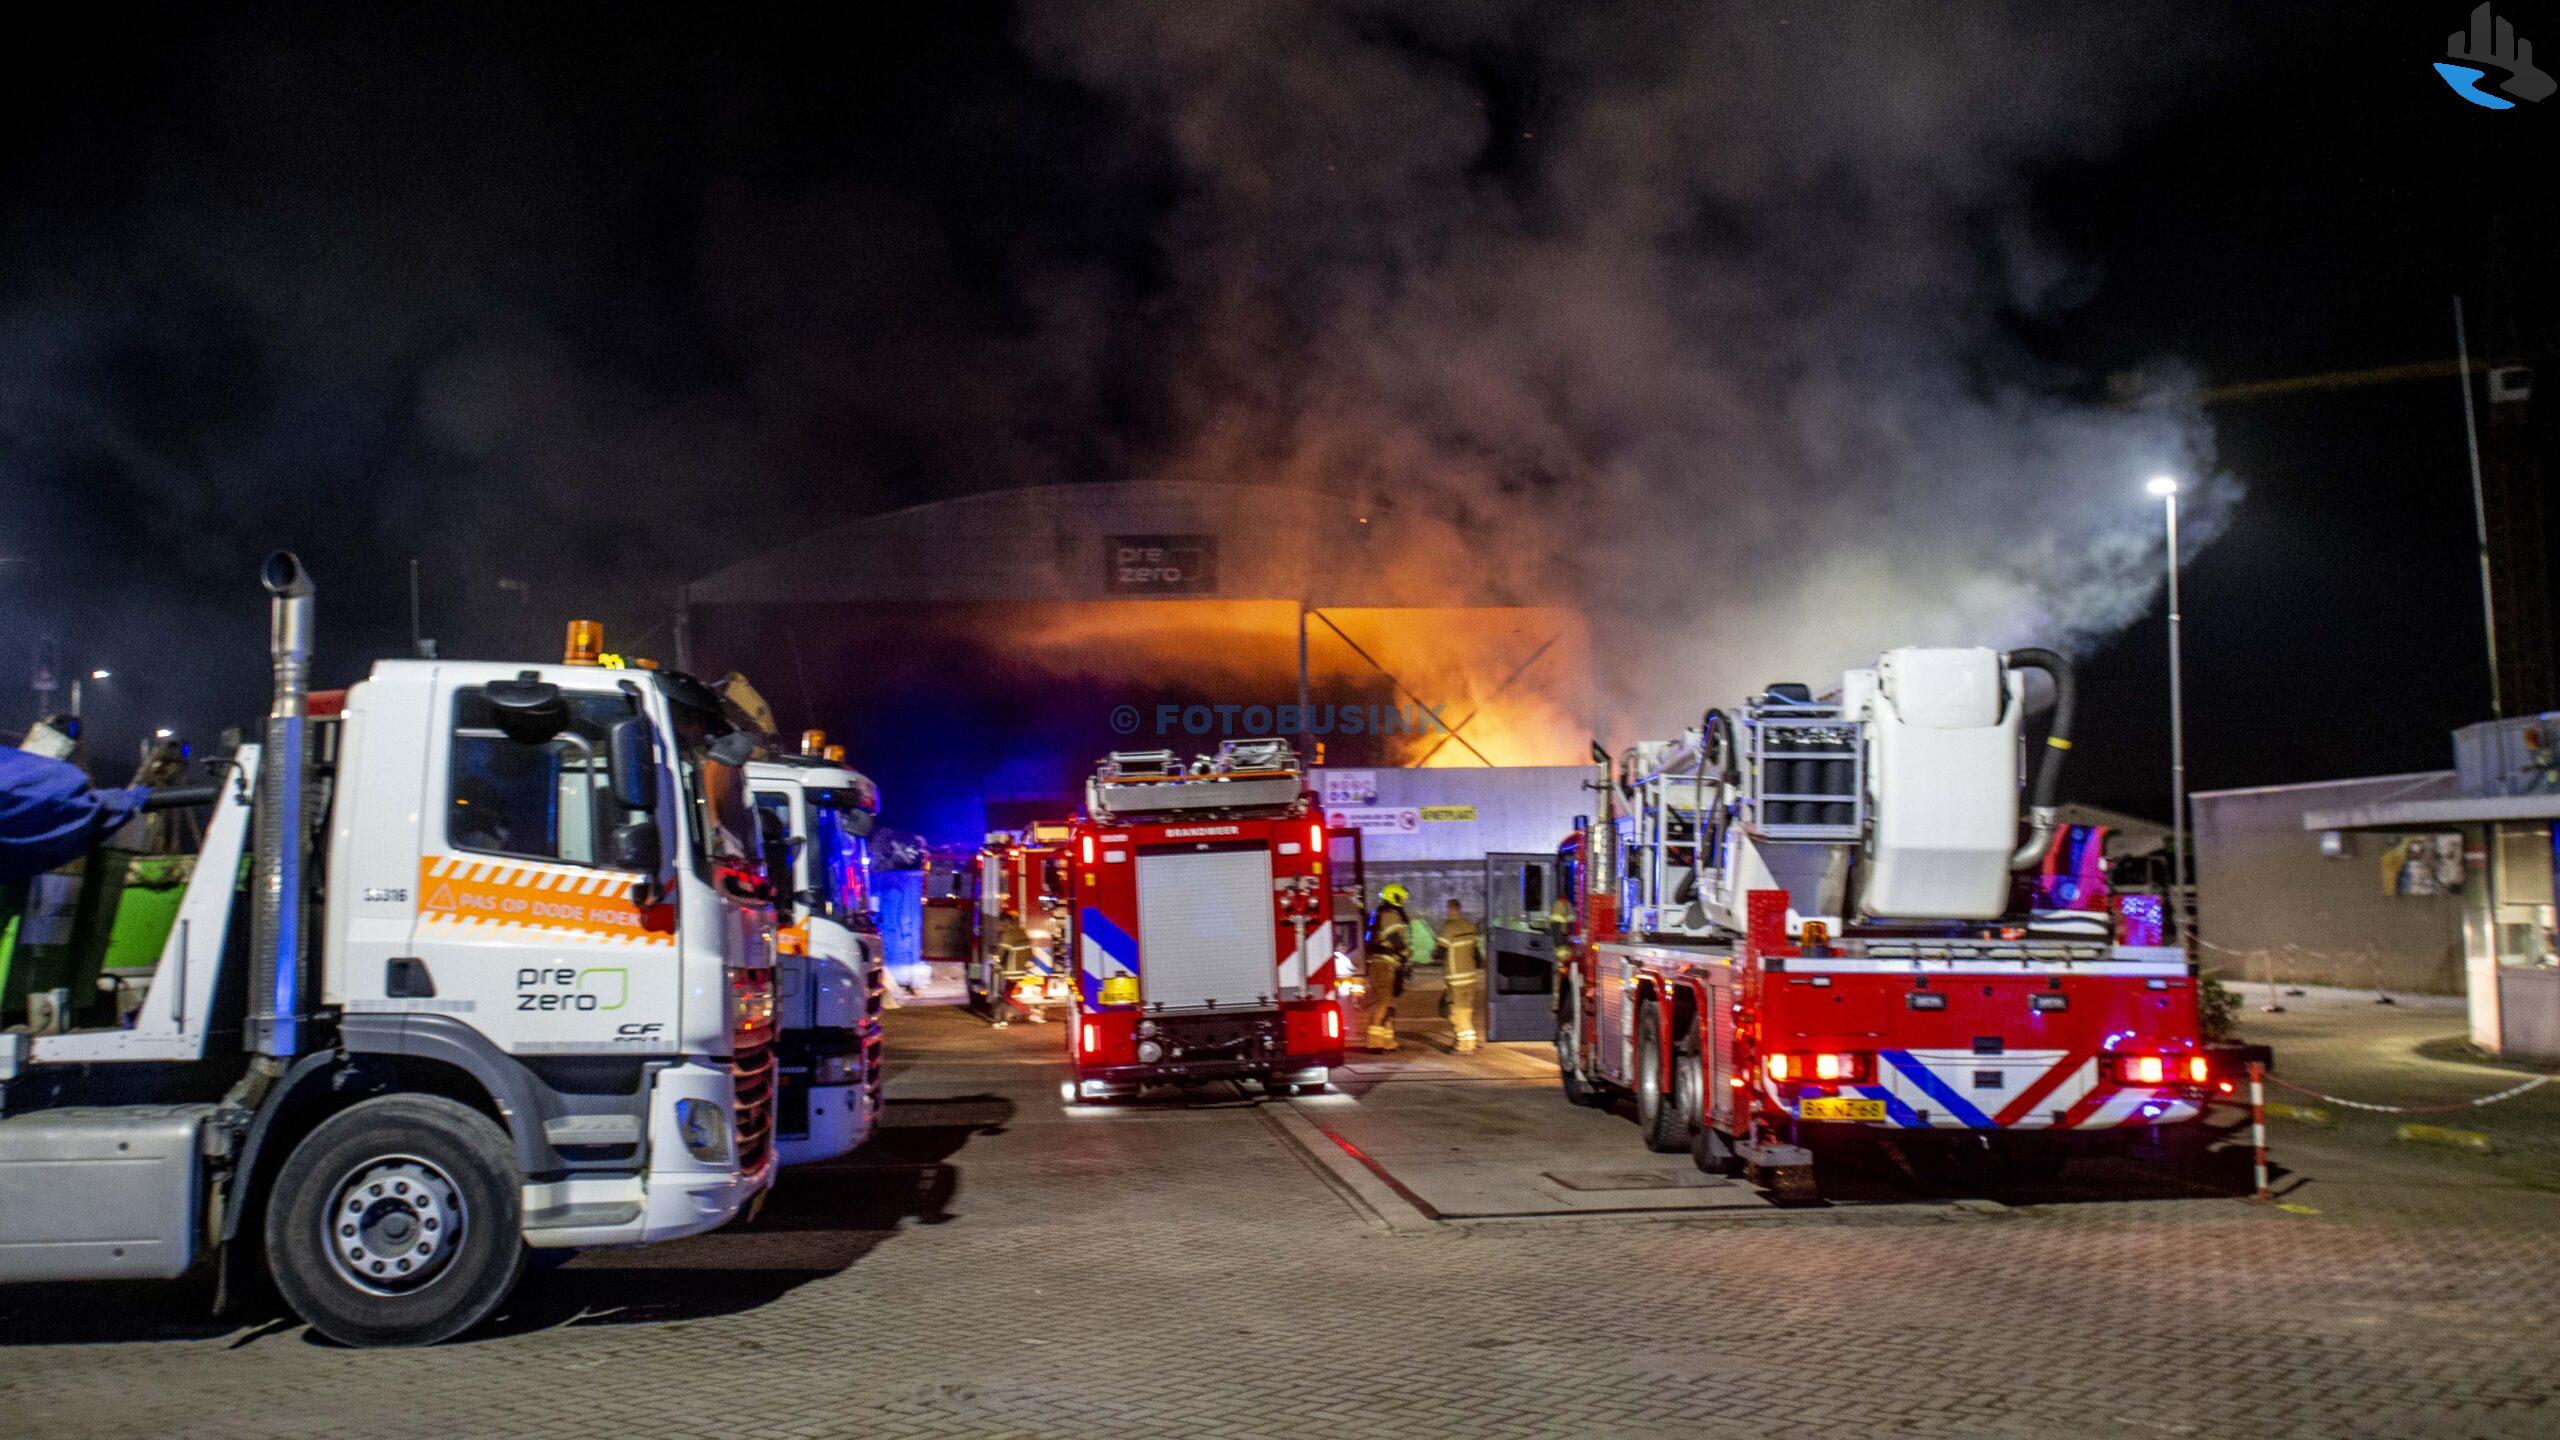 Flinke brand bij Sita Recycling Service aan de Kerkeplaat in Dordrecht